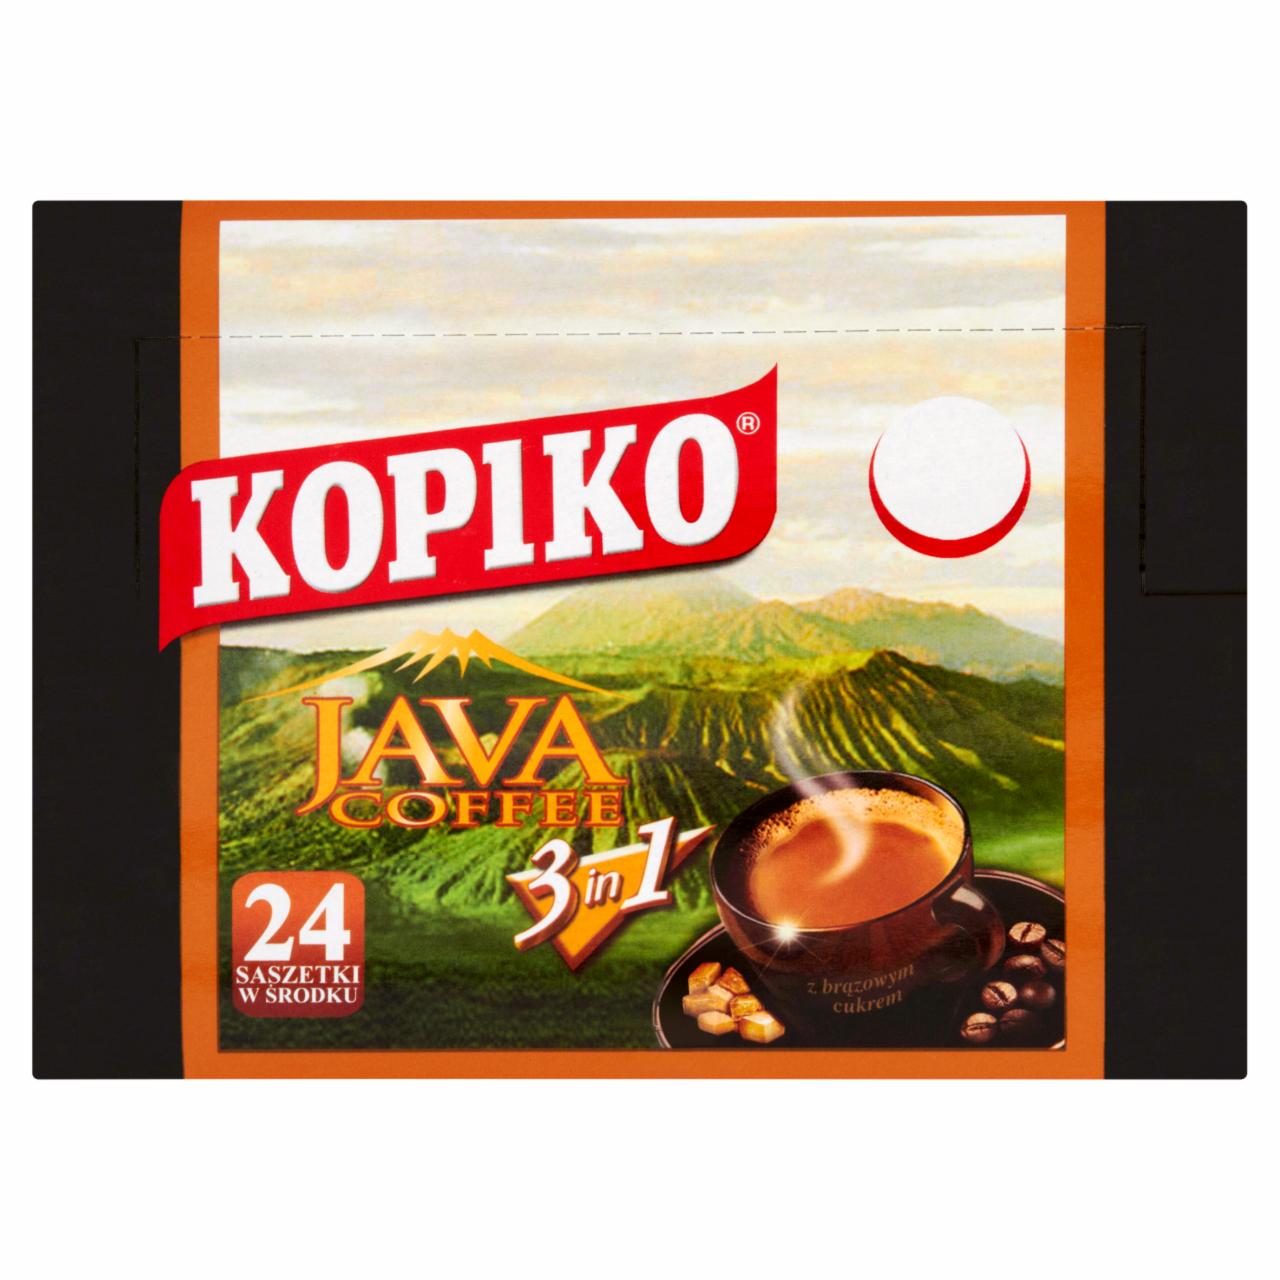 Zdjęcia - Kopiko Java Coffee 3in1 Rozpuszczalny napój kawowy 504 g (24 x 21 g)